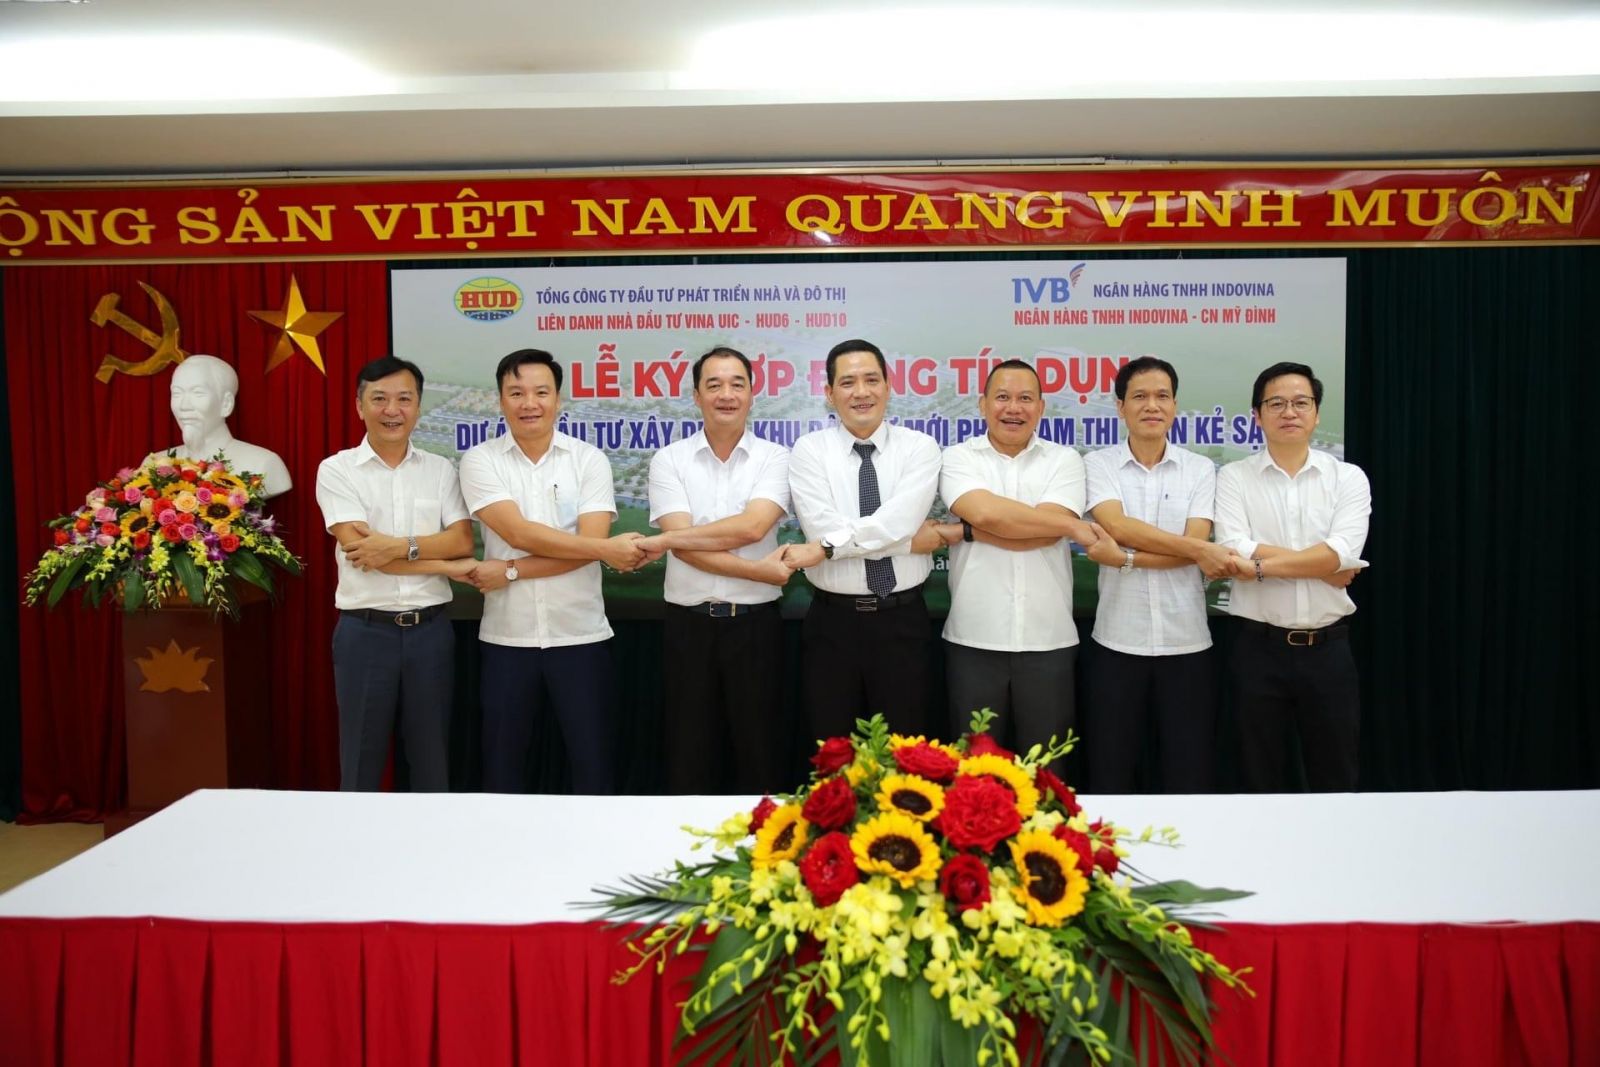 Liên danh VINA UIC - HUD6 - HUD10 và Ngân hàng IVB ký kết hợp đồng tín dụng triển khai Dự án: Đầu tư xây dựng Khu dân cư mới phía Nam thị trấn Kẻ Sặt, huyện Bình Giang.